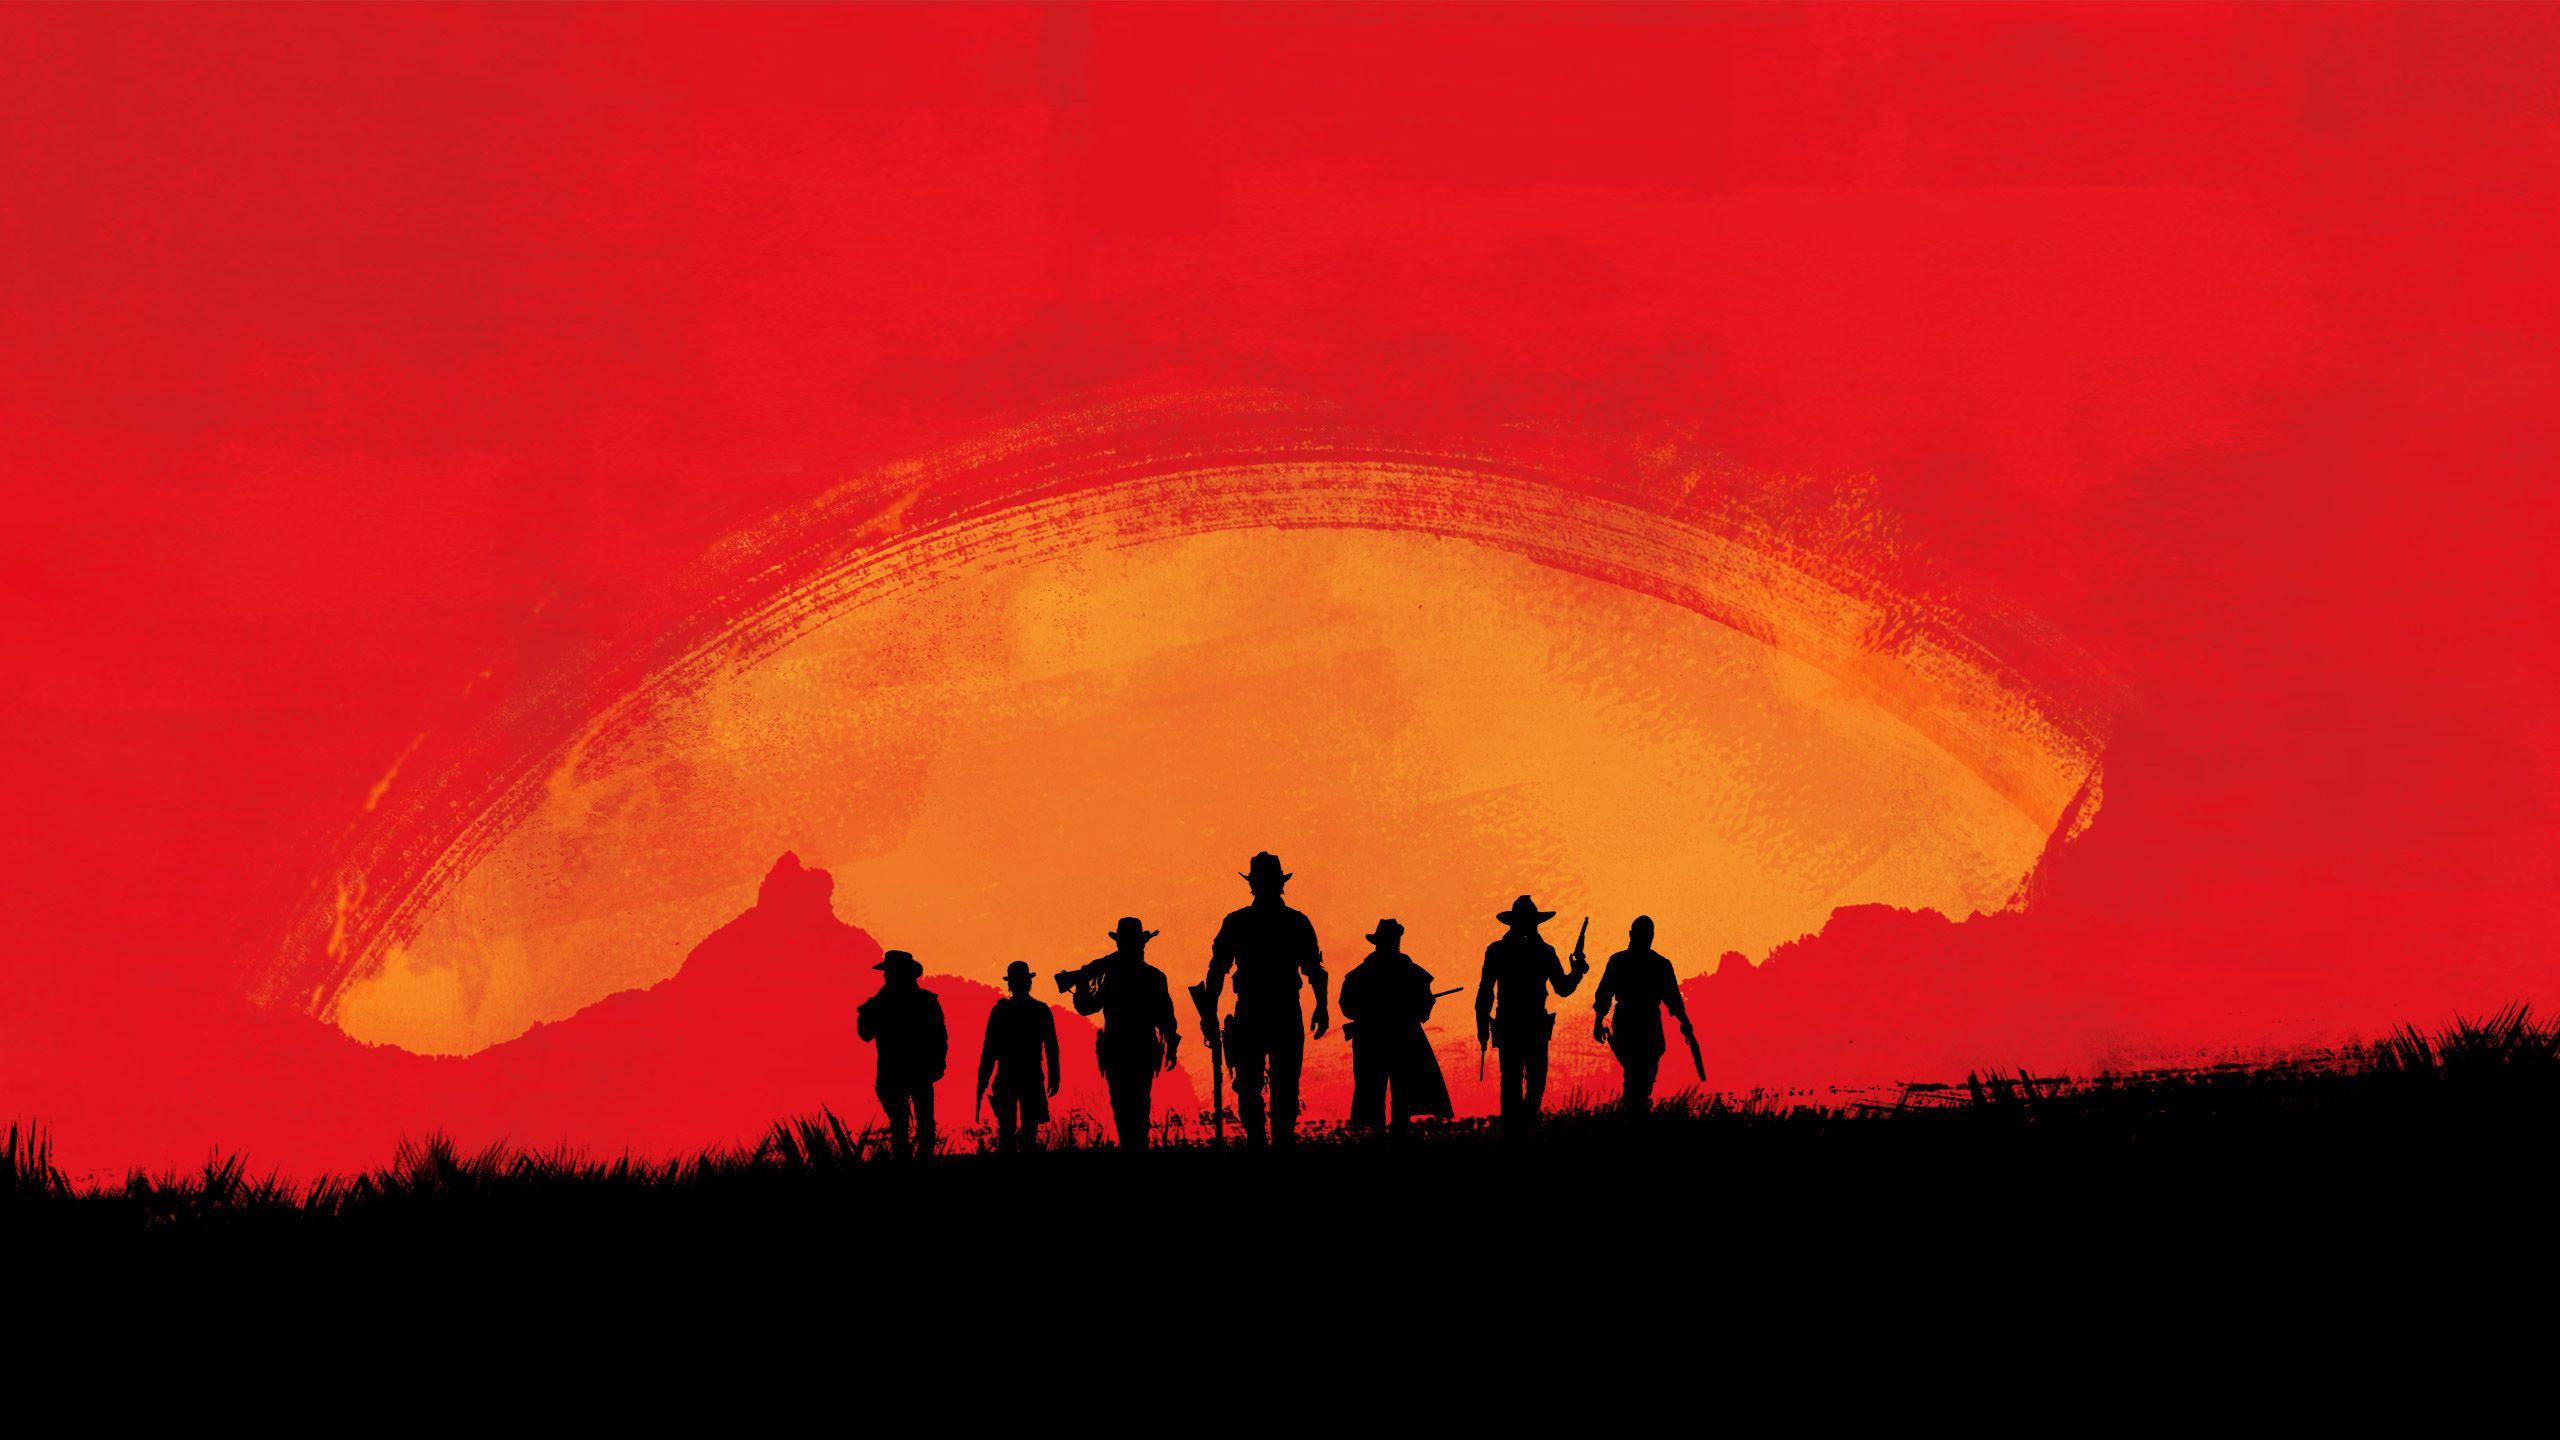 Hình nền Red Dead Redemption 2: Thế giới bao la và hoang dã của Red Dead Redemption 2 sẽ được tái hiện chân thật và đẹp mắt qua những hình nền này. Hãy trang trí cho màn hình điện thoại của bạn với những cảnh quan tuyệt đẹp, thử thách và những khoảnh khắc đầy cảm xúc của game này.